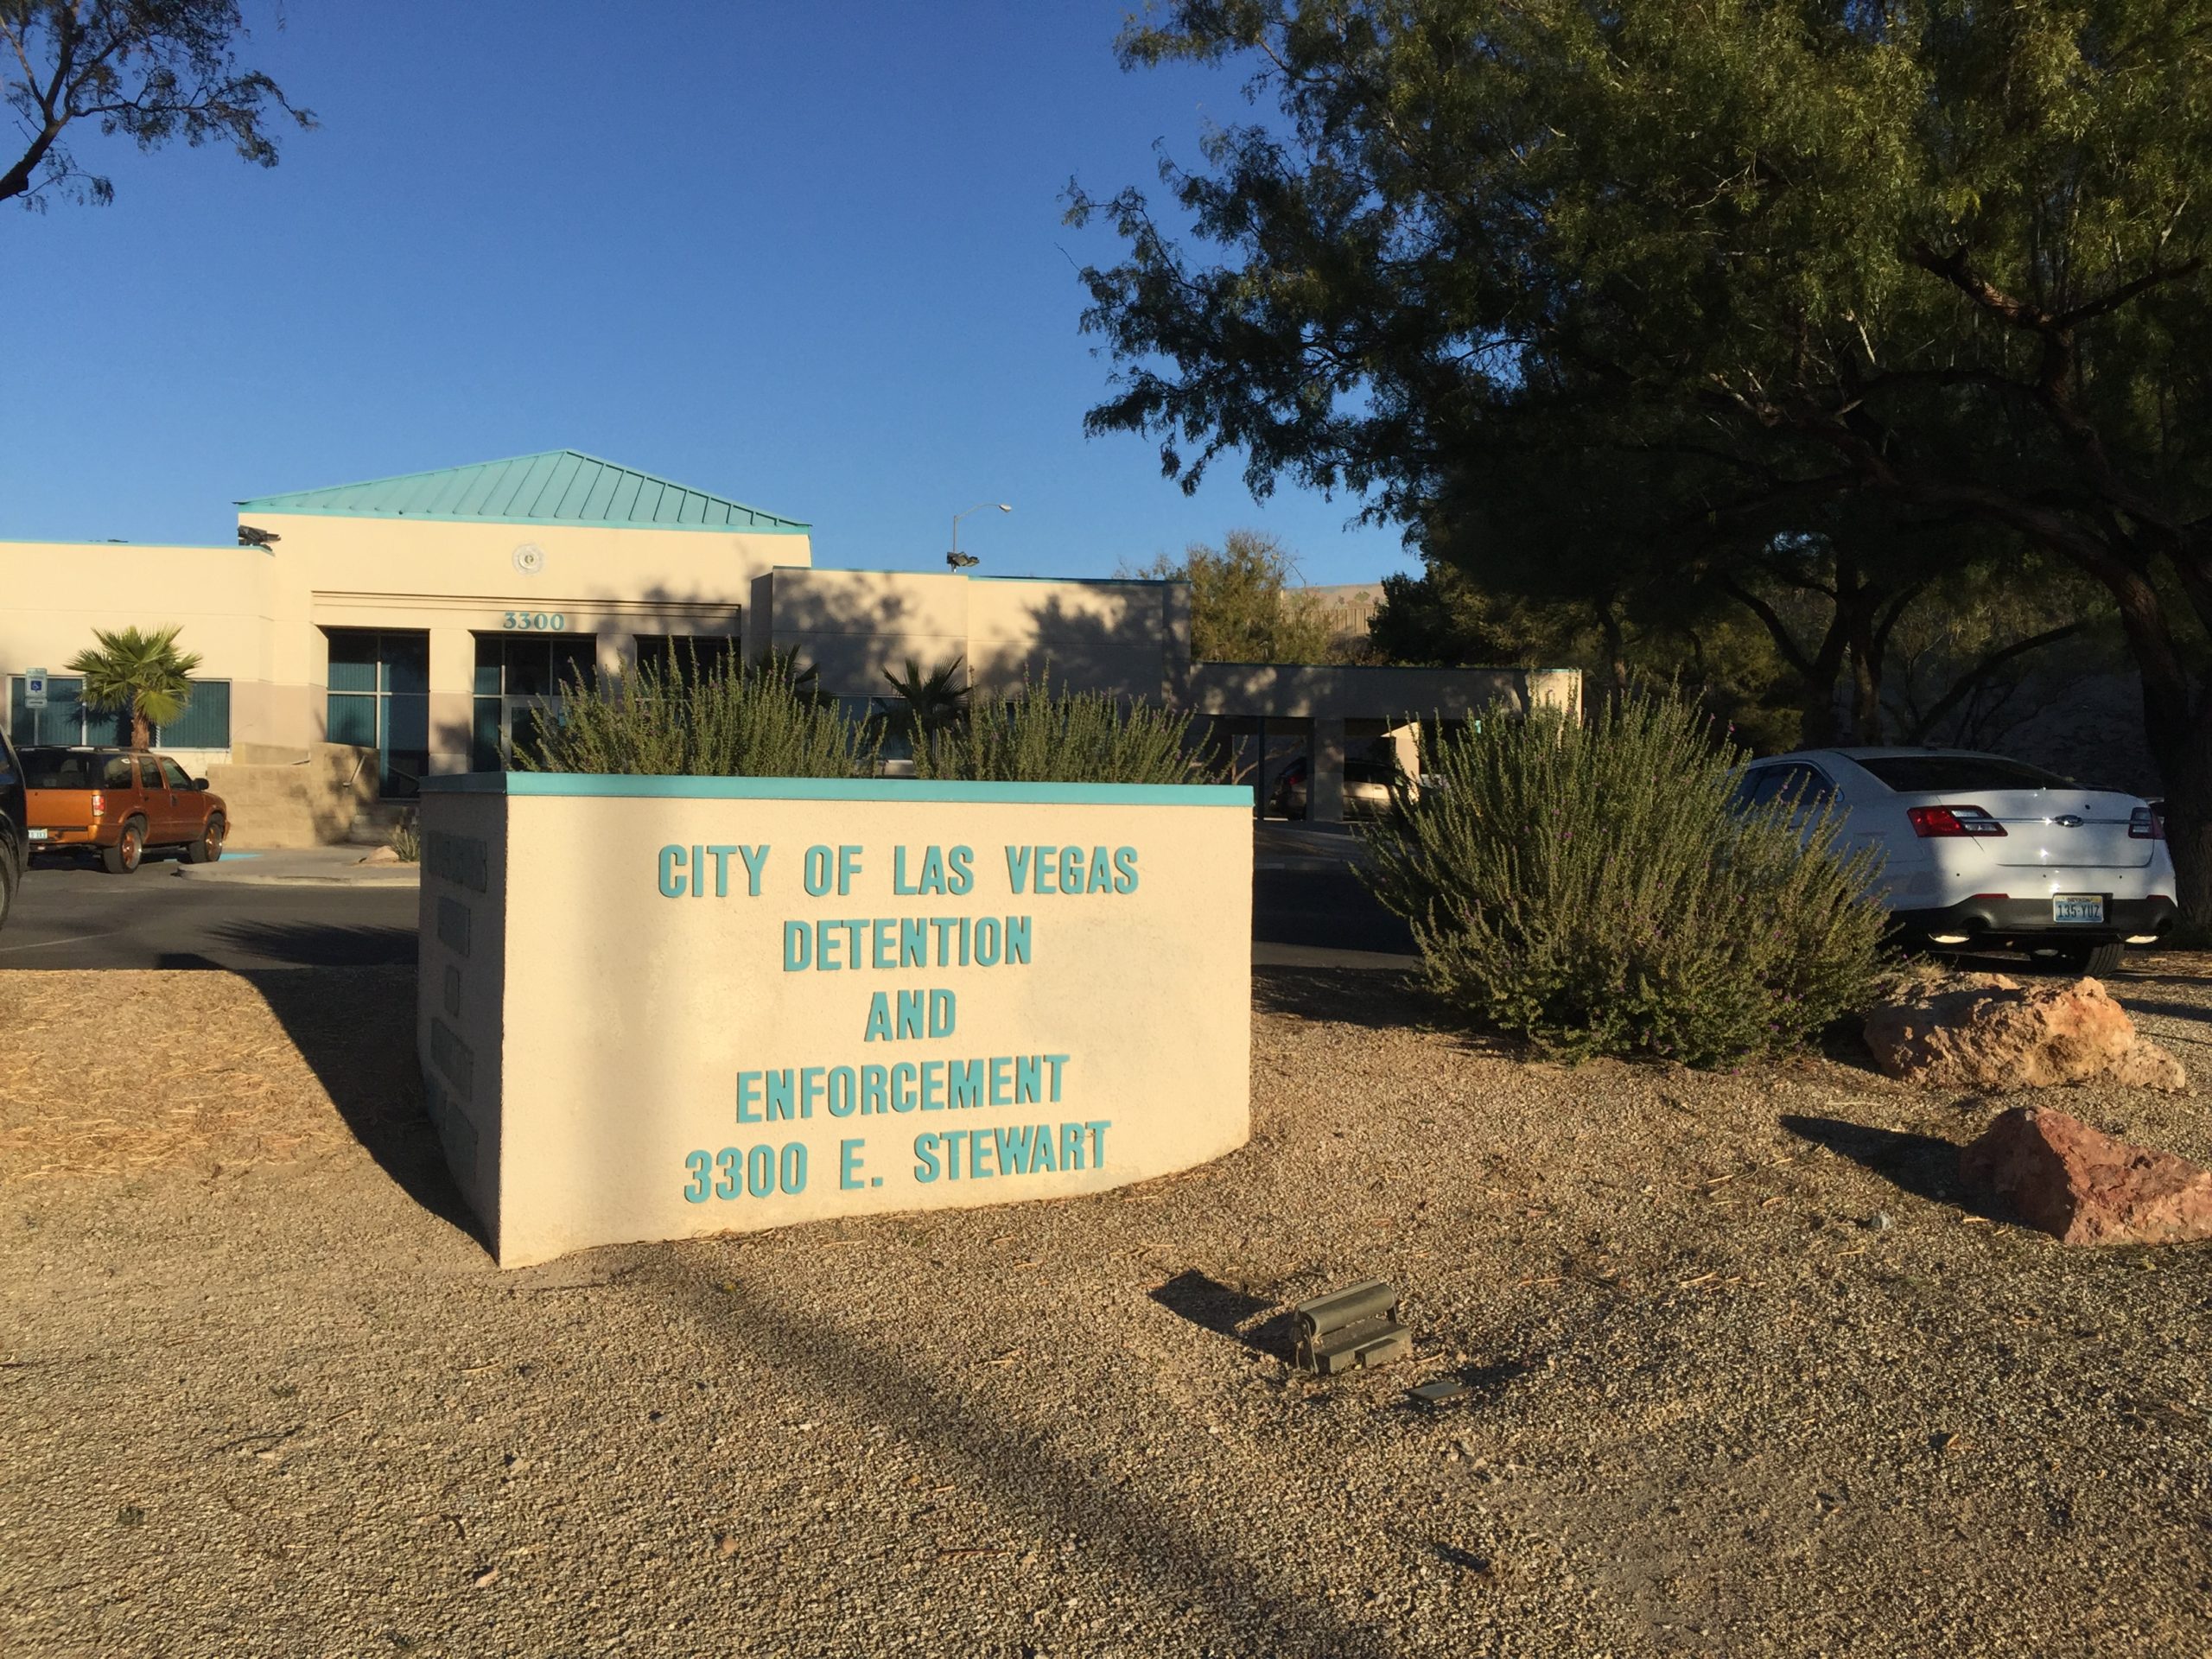 City of Las Vegas Detention Center and Enforcement